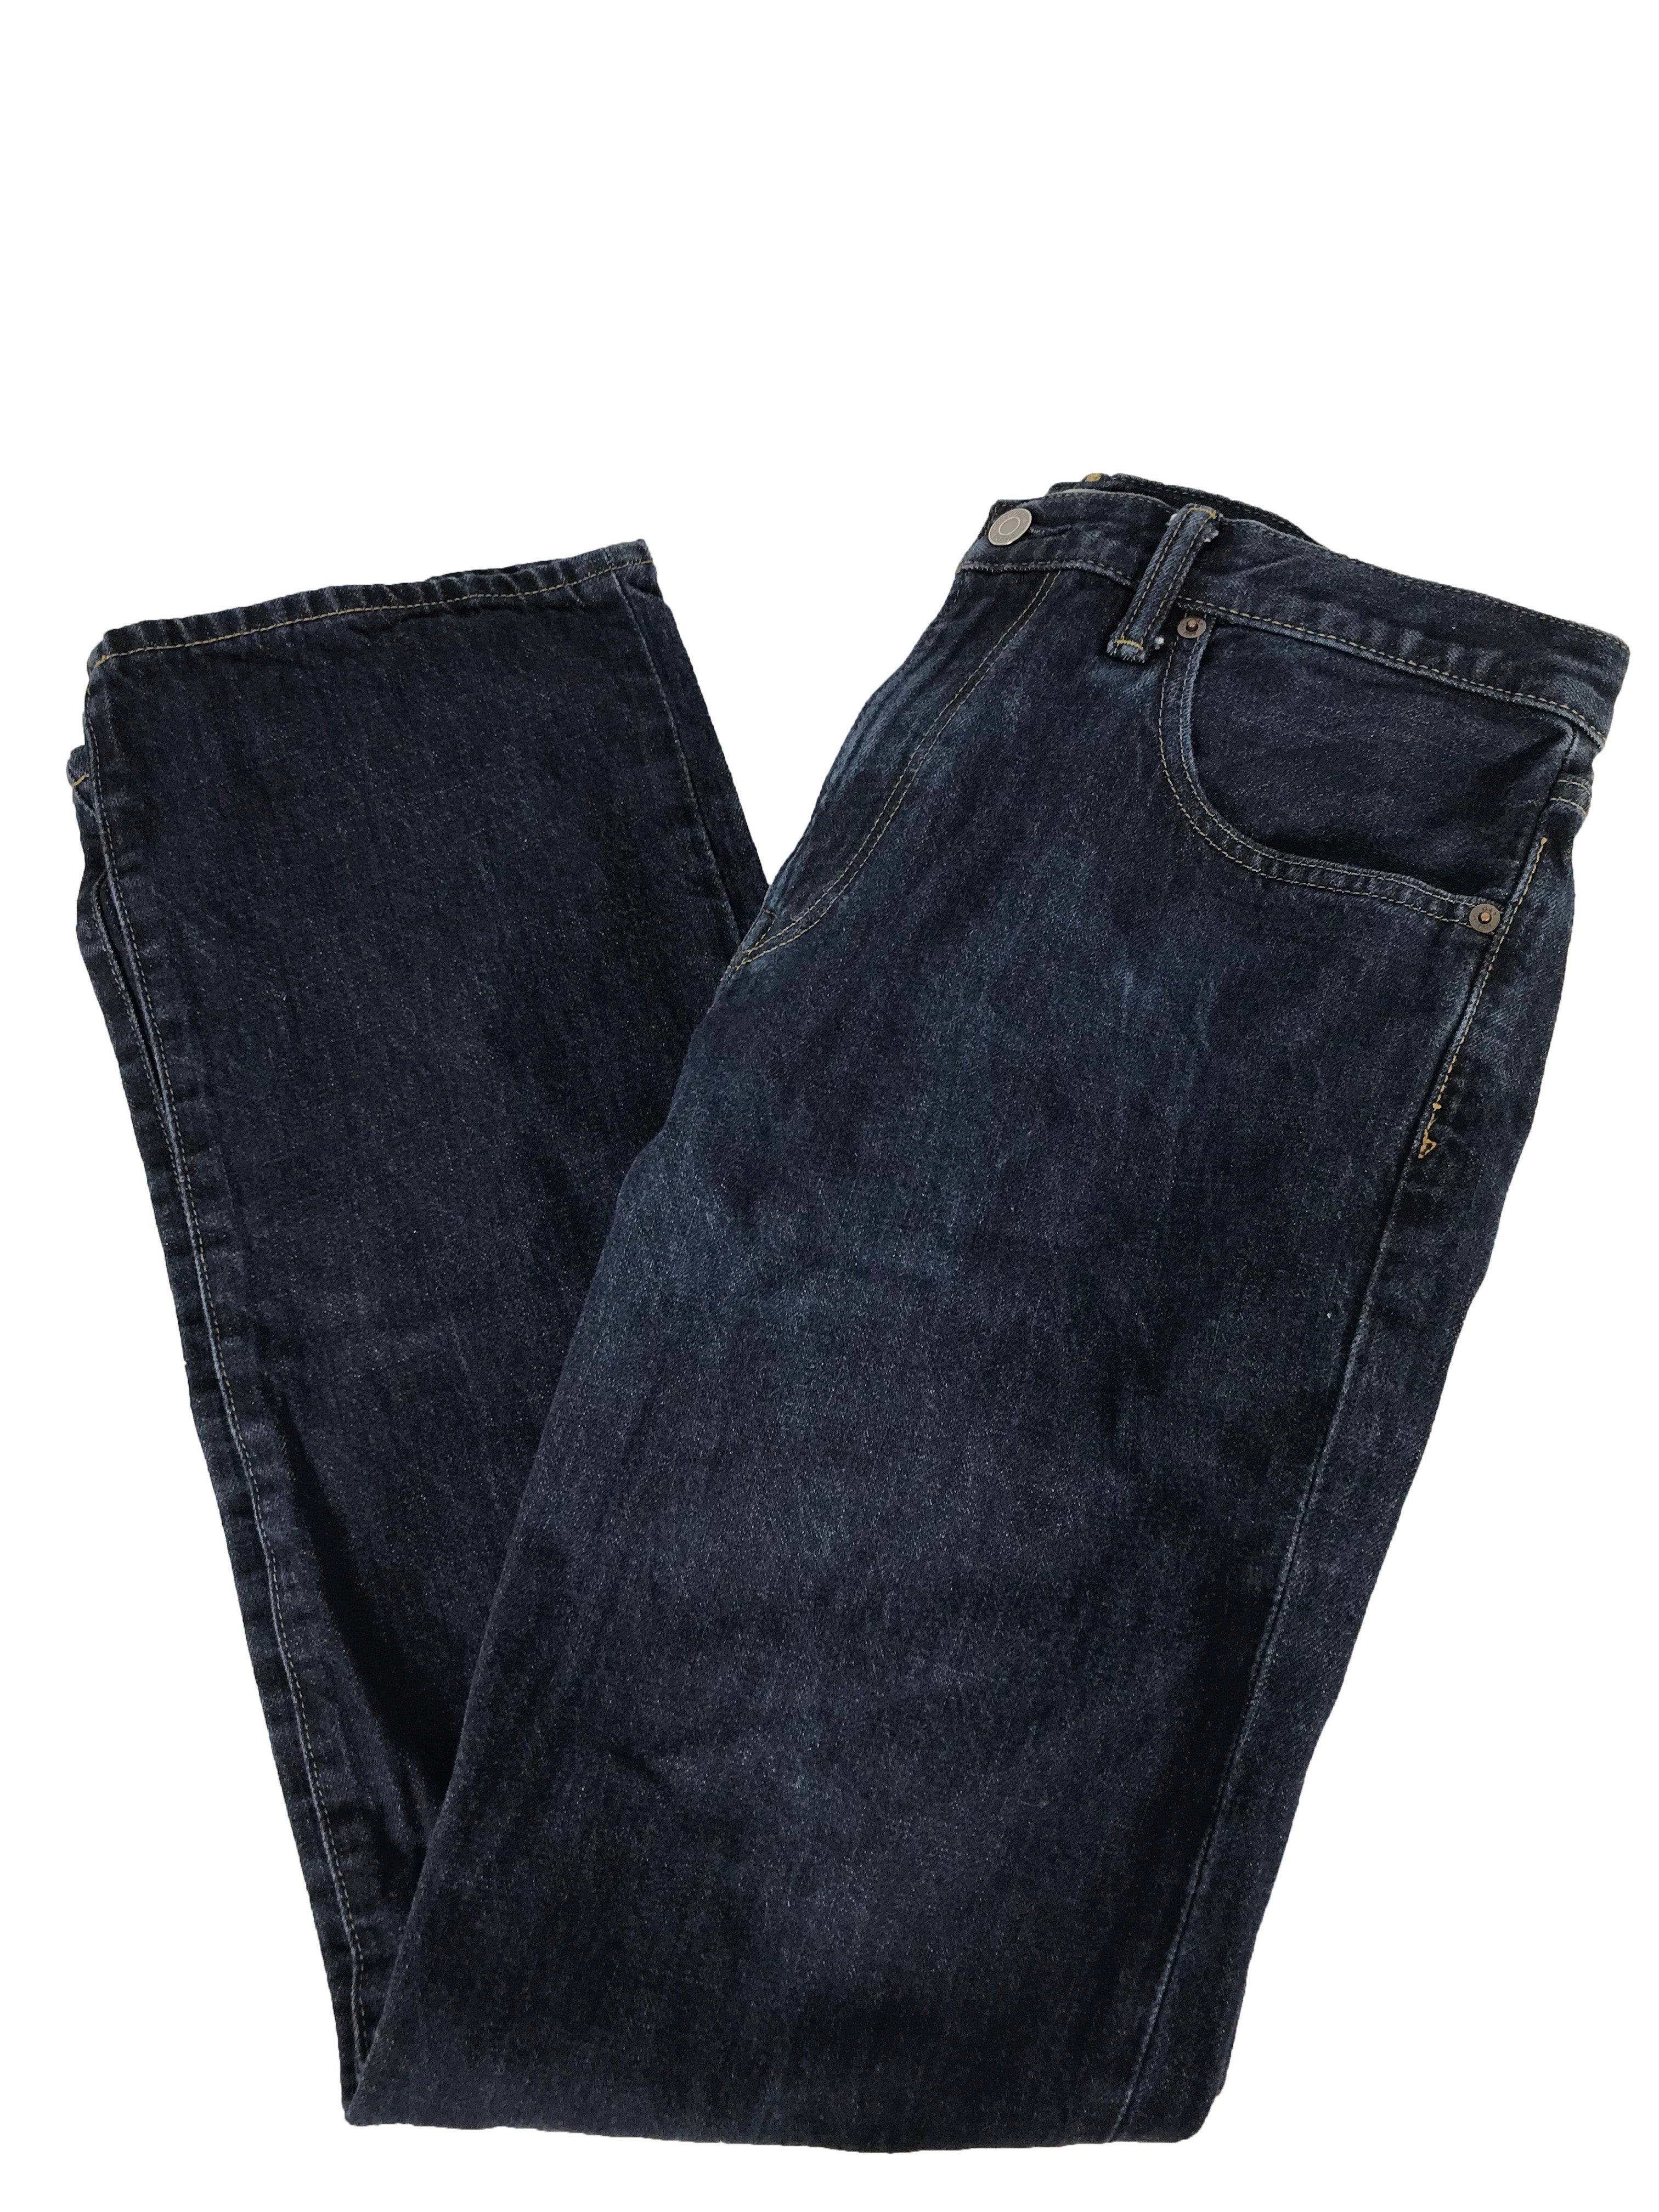 Gap 1969 Jeans Men's Size 32x34 MSU Surplus Store